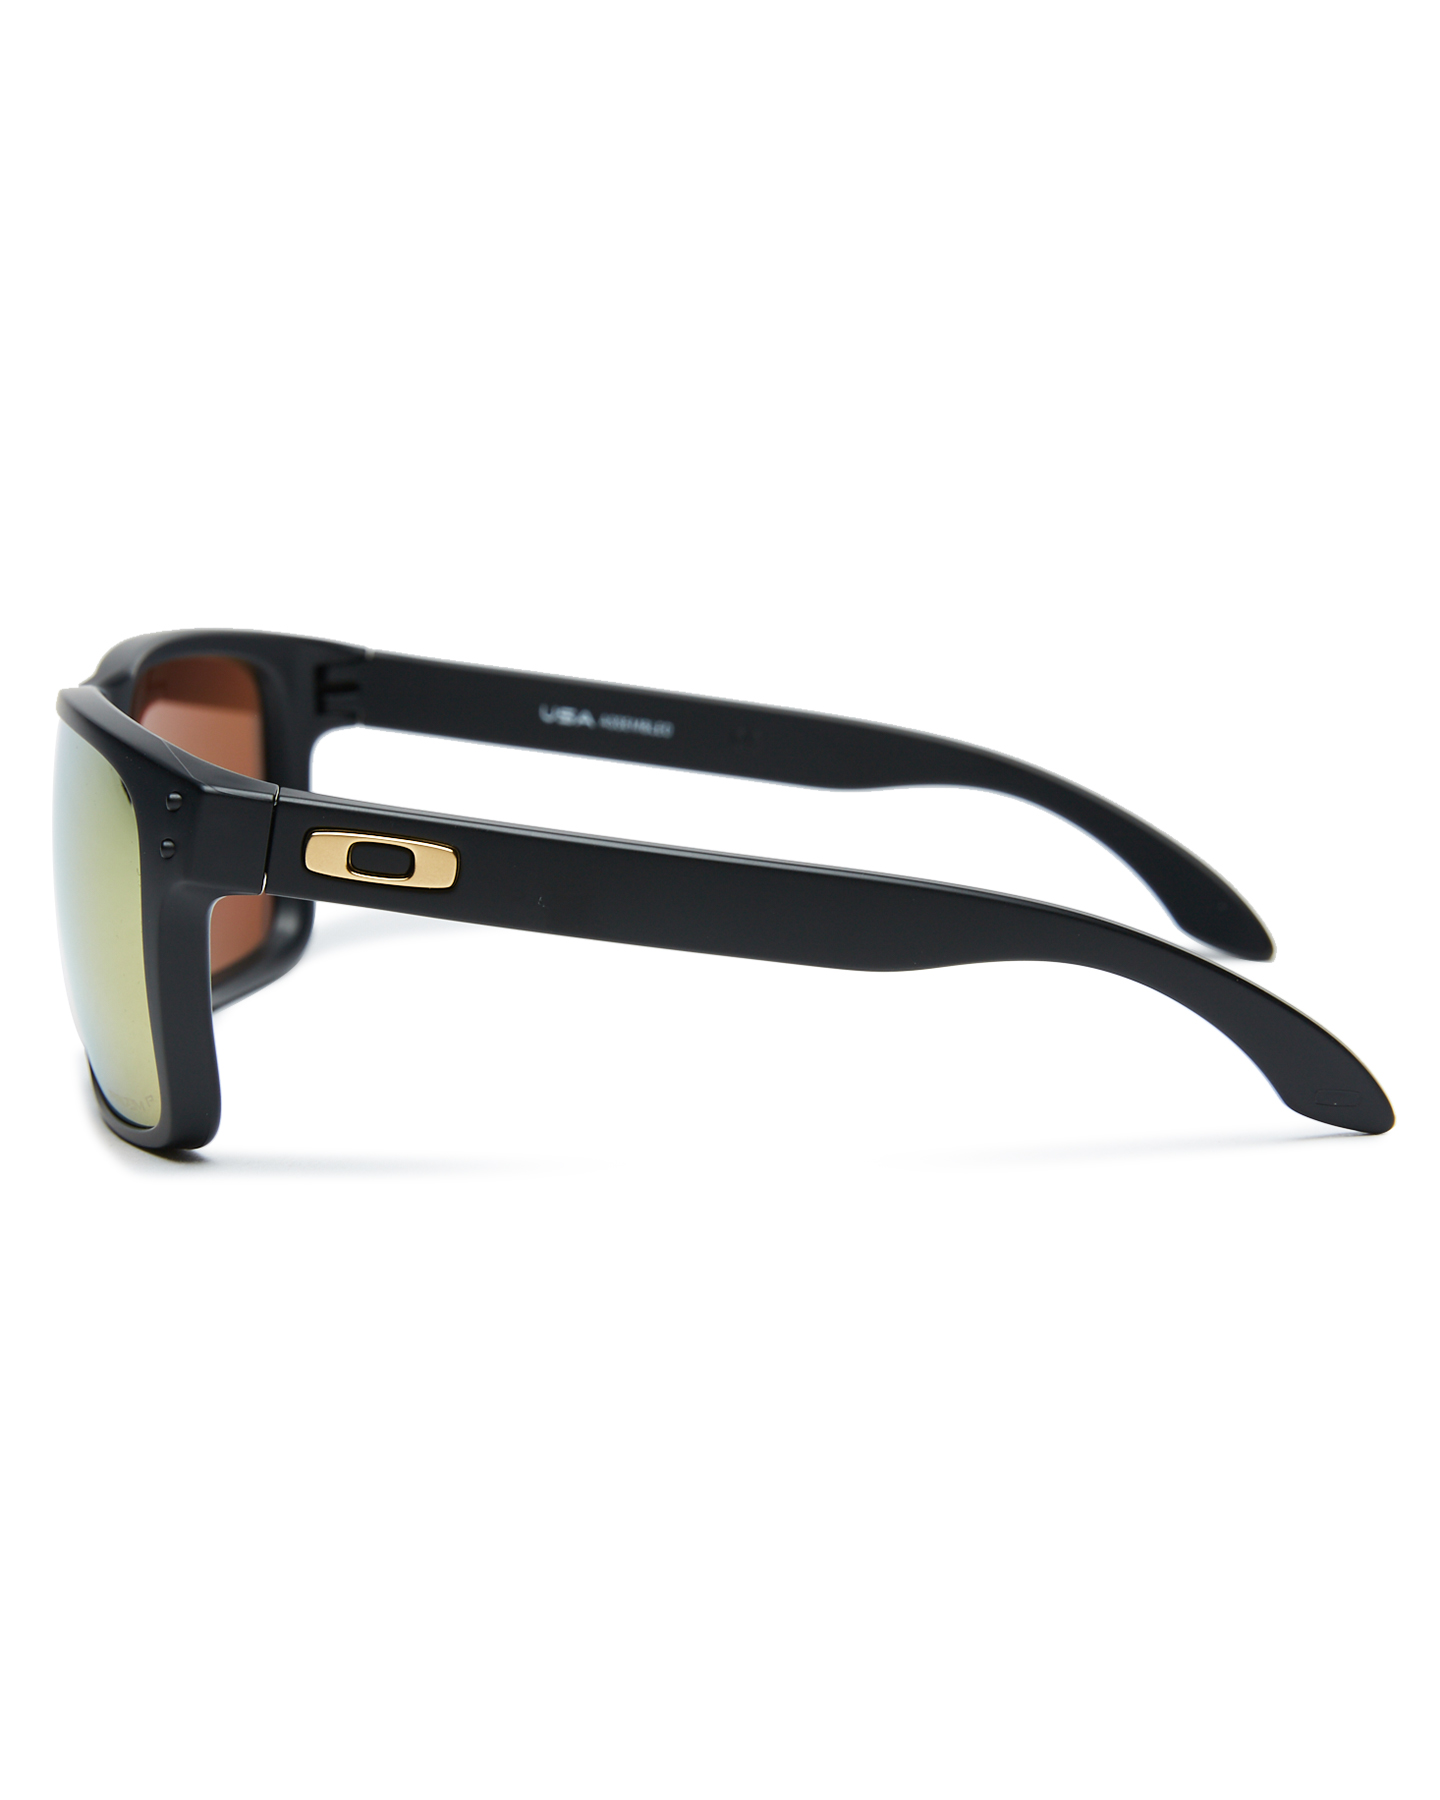 Oakley Holbrook Polarized Sunglasses - Matte Black 24K | SurfStitch